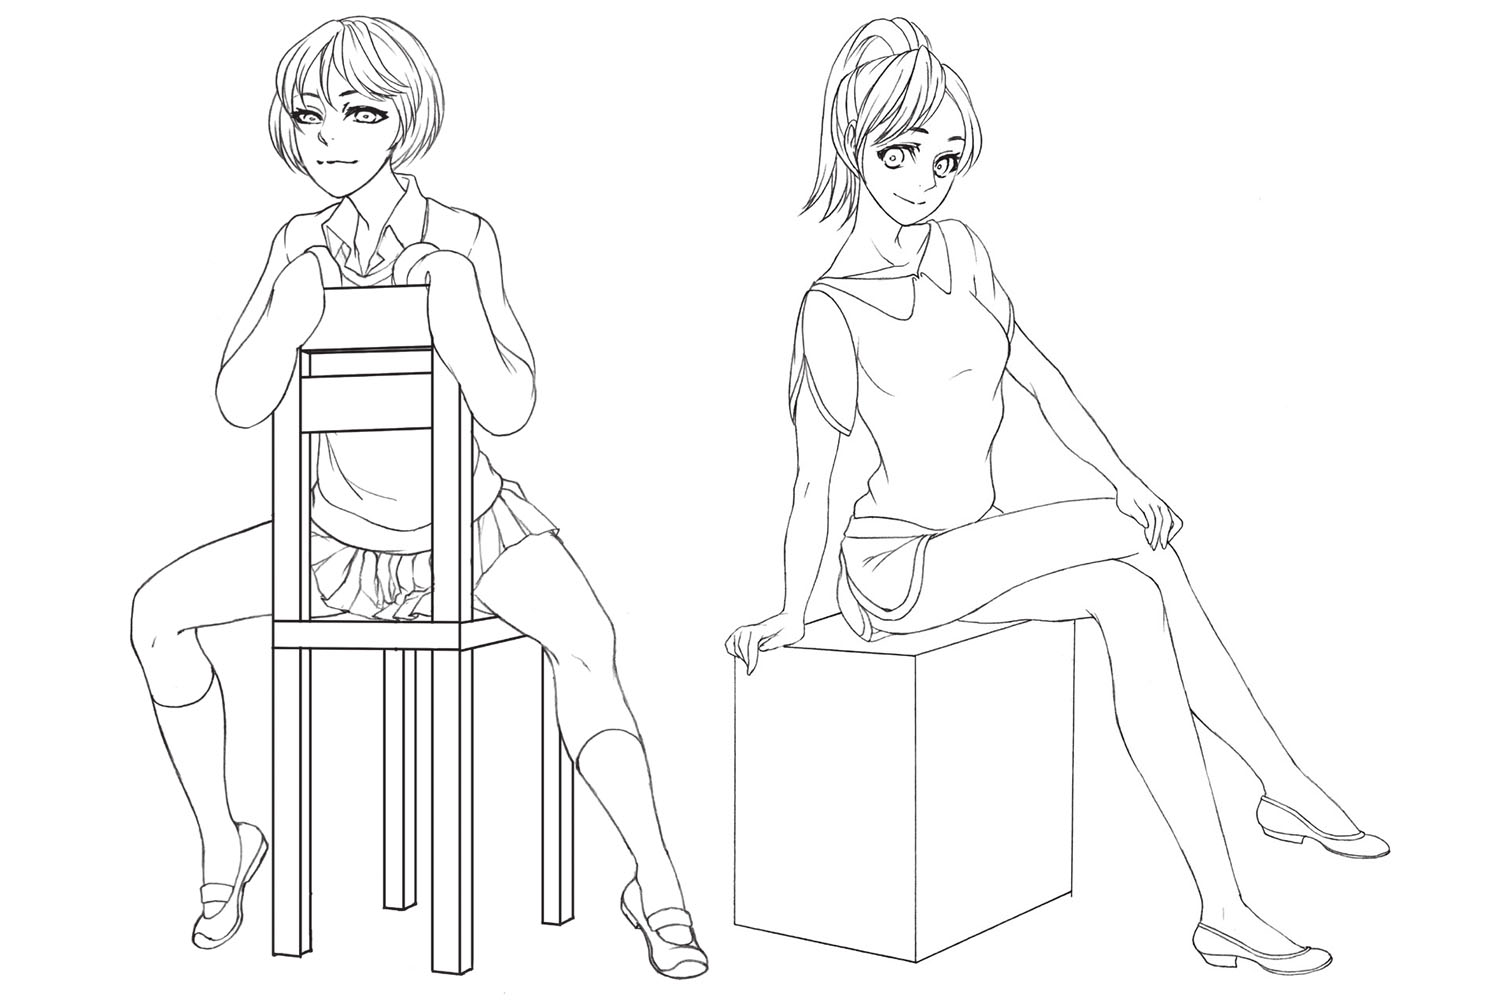 女性キャラクターイラストのポージングの極意「座る」ことで変化する筋肉の動きに注意しよう